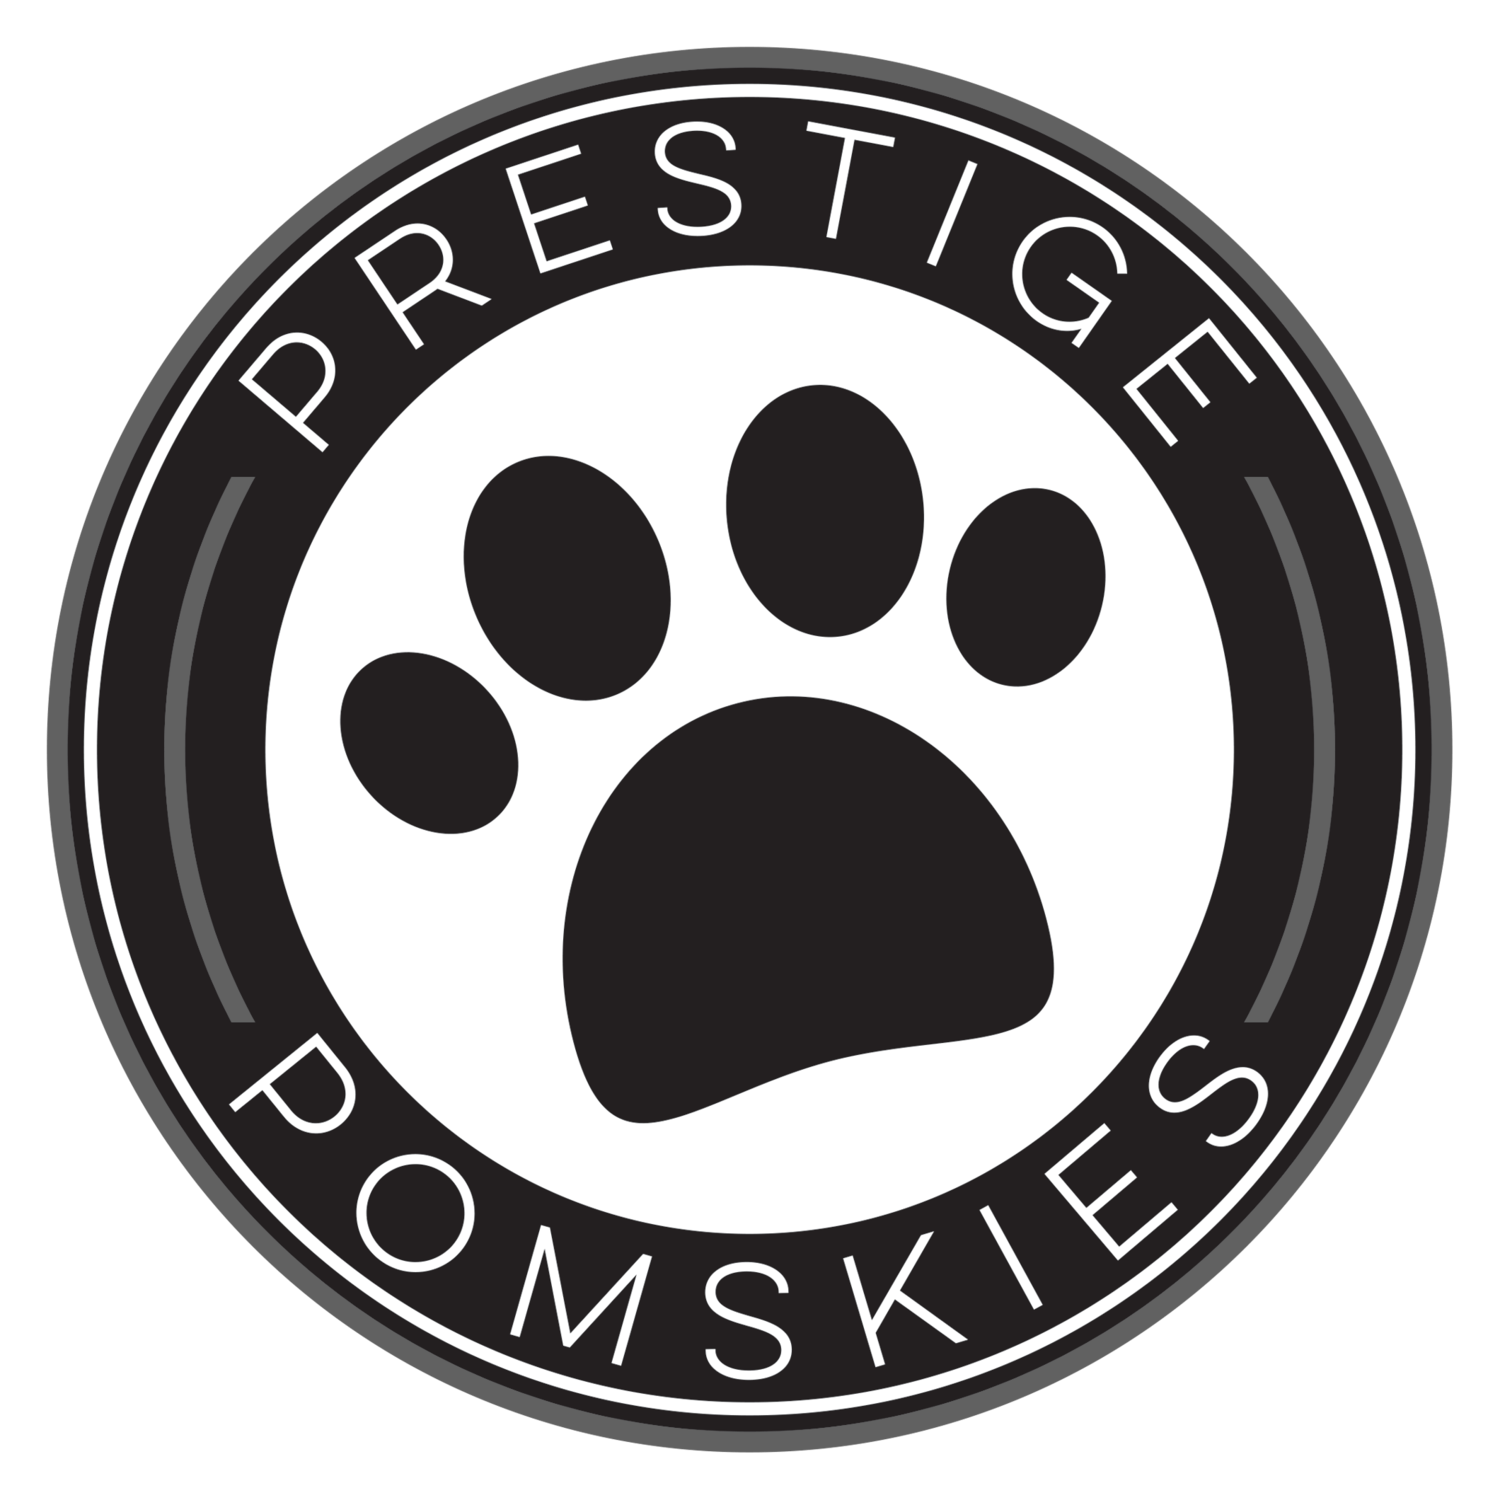 Prestige Pomskies UK Pomsky Breeder